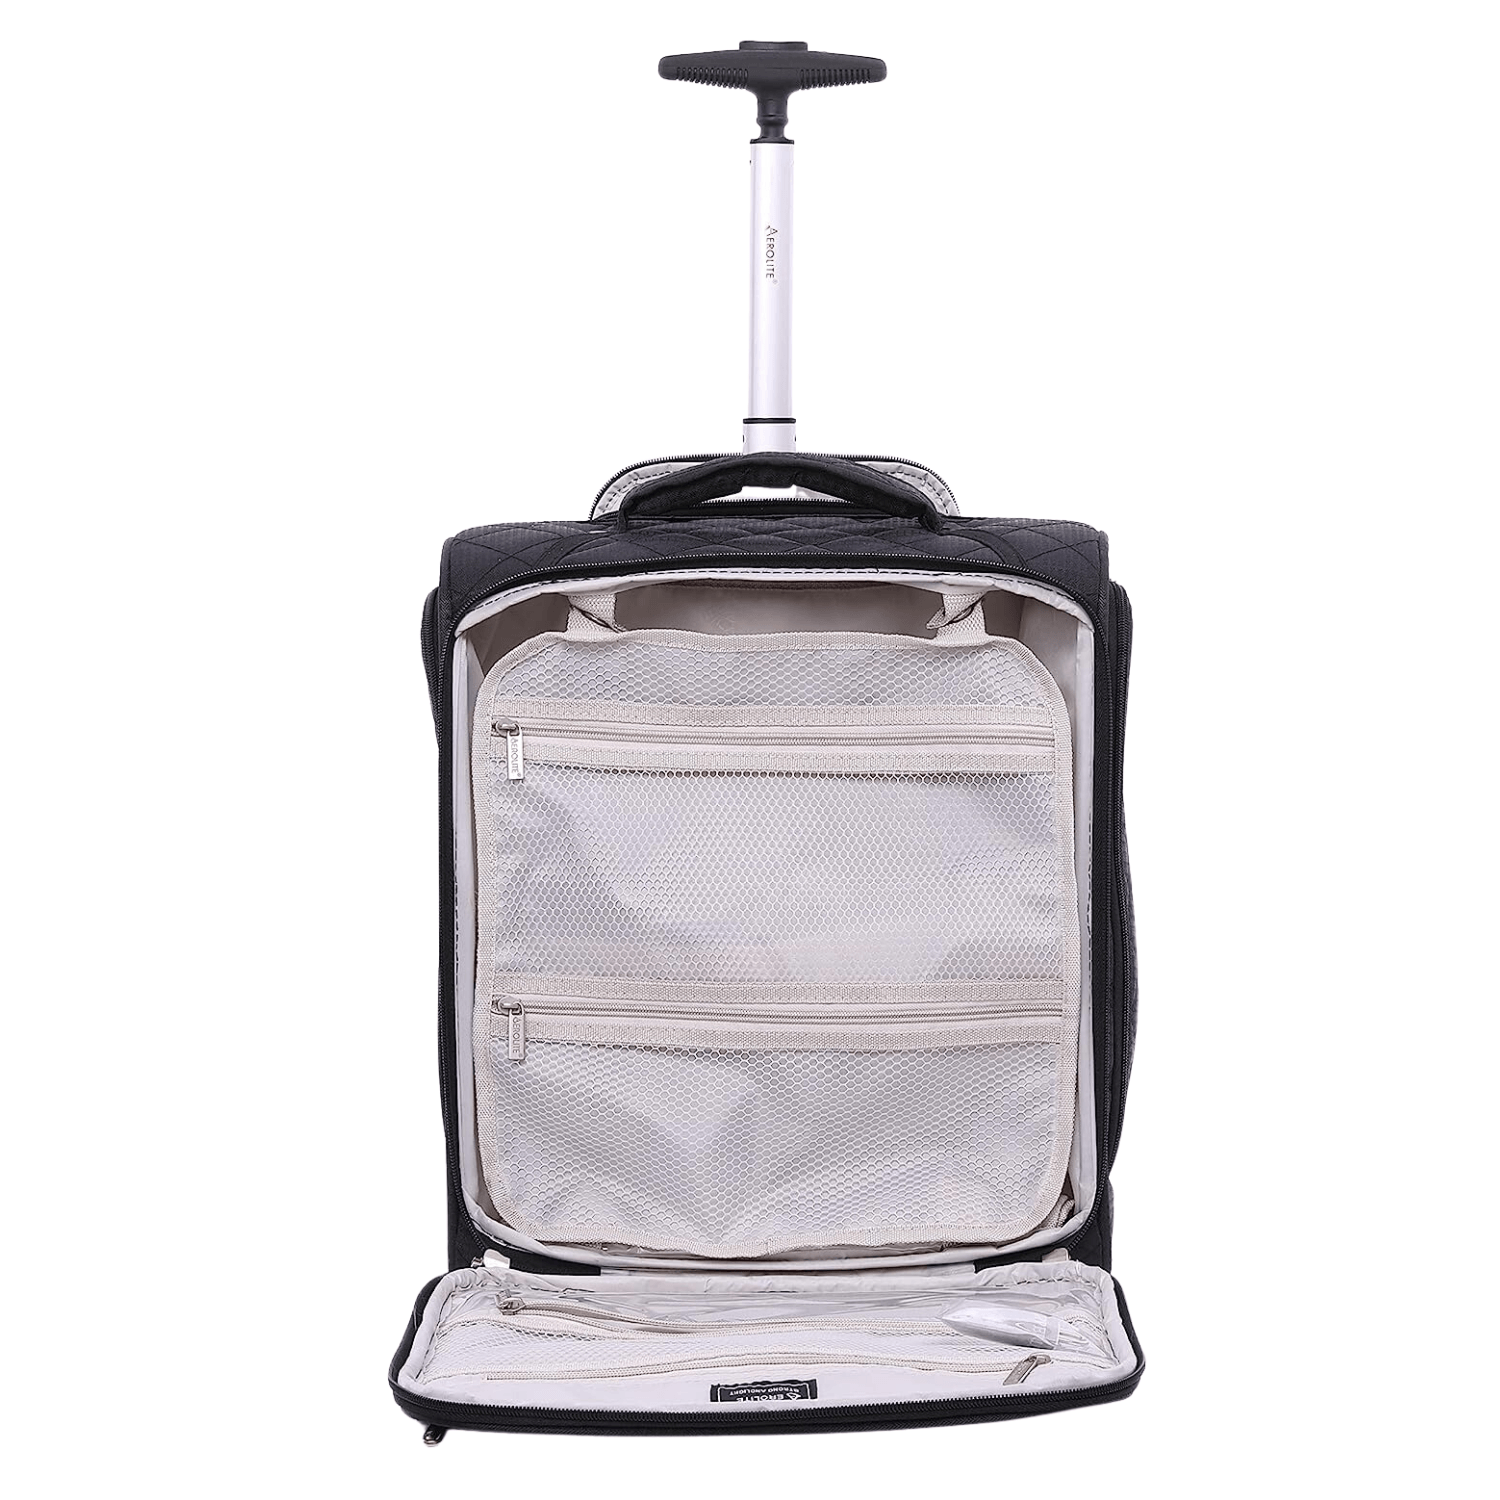 Aggregate more than 81 i carry trolley bag best - xkldase.edu.vn